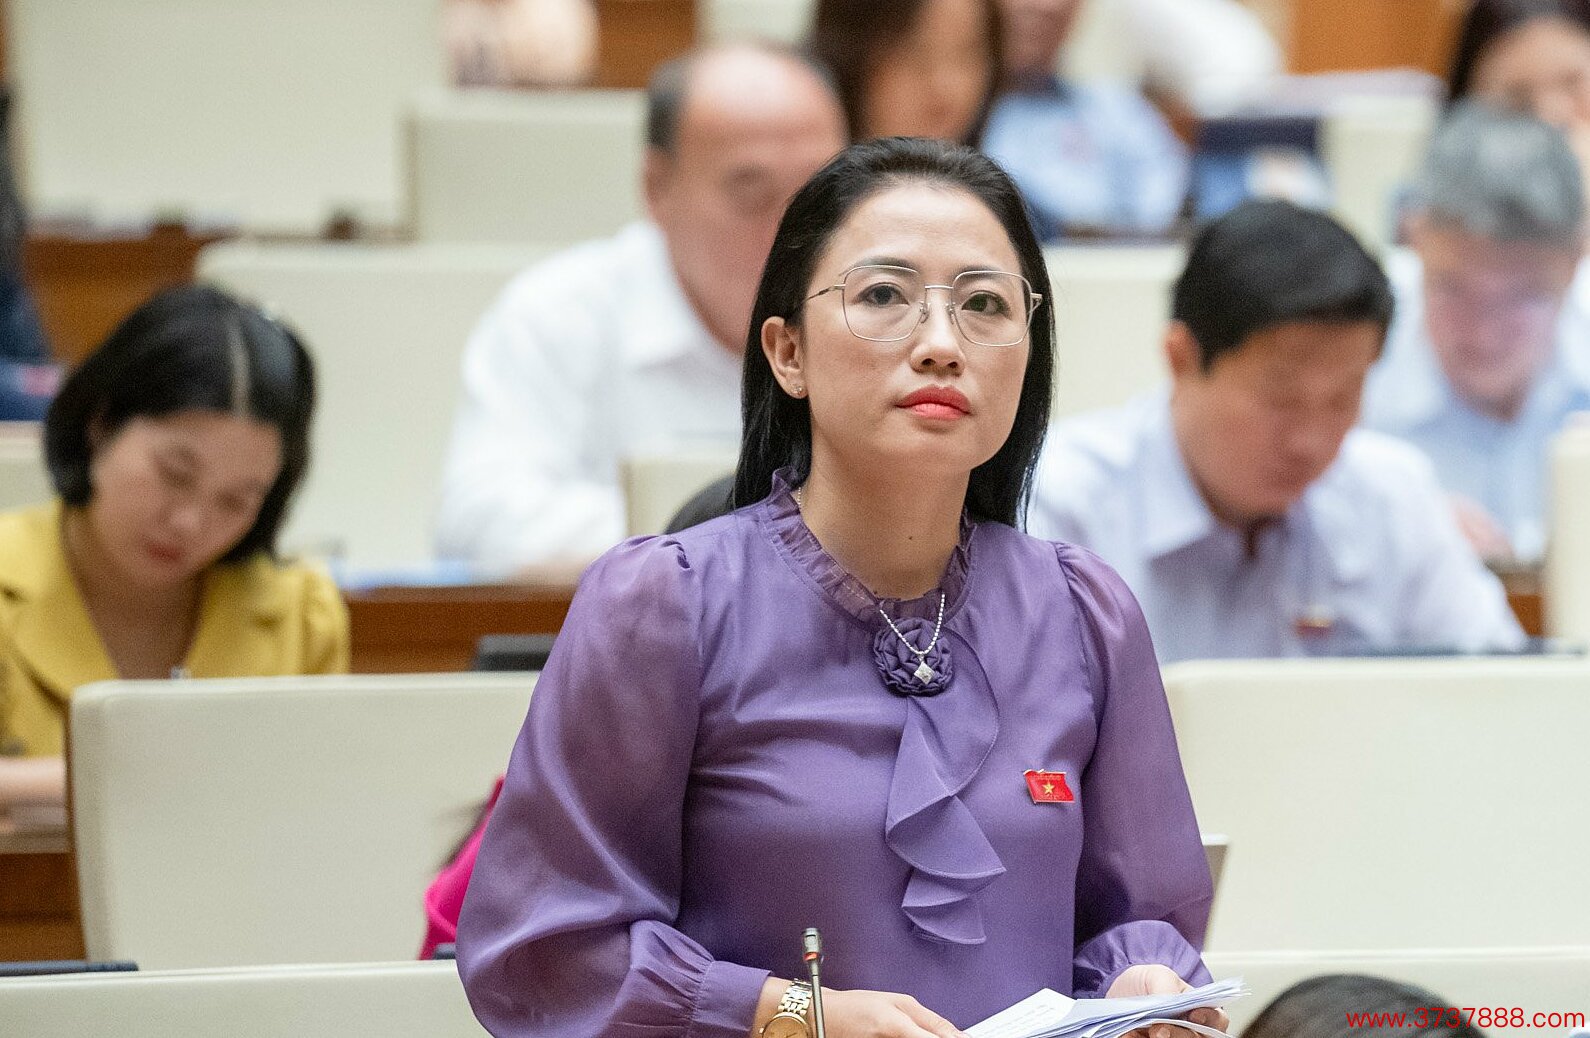 Đại biểu Trần Khánh Thu phát biểu tại phiên họp sáng 27/5. Ảnh: Media Quốc hội